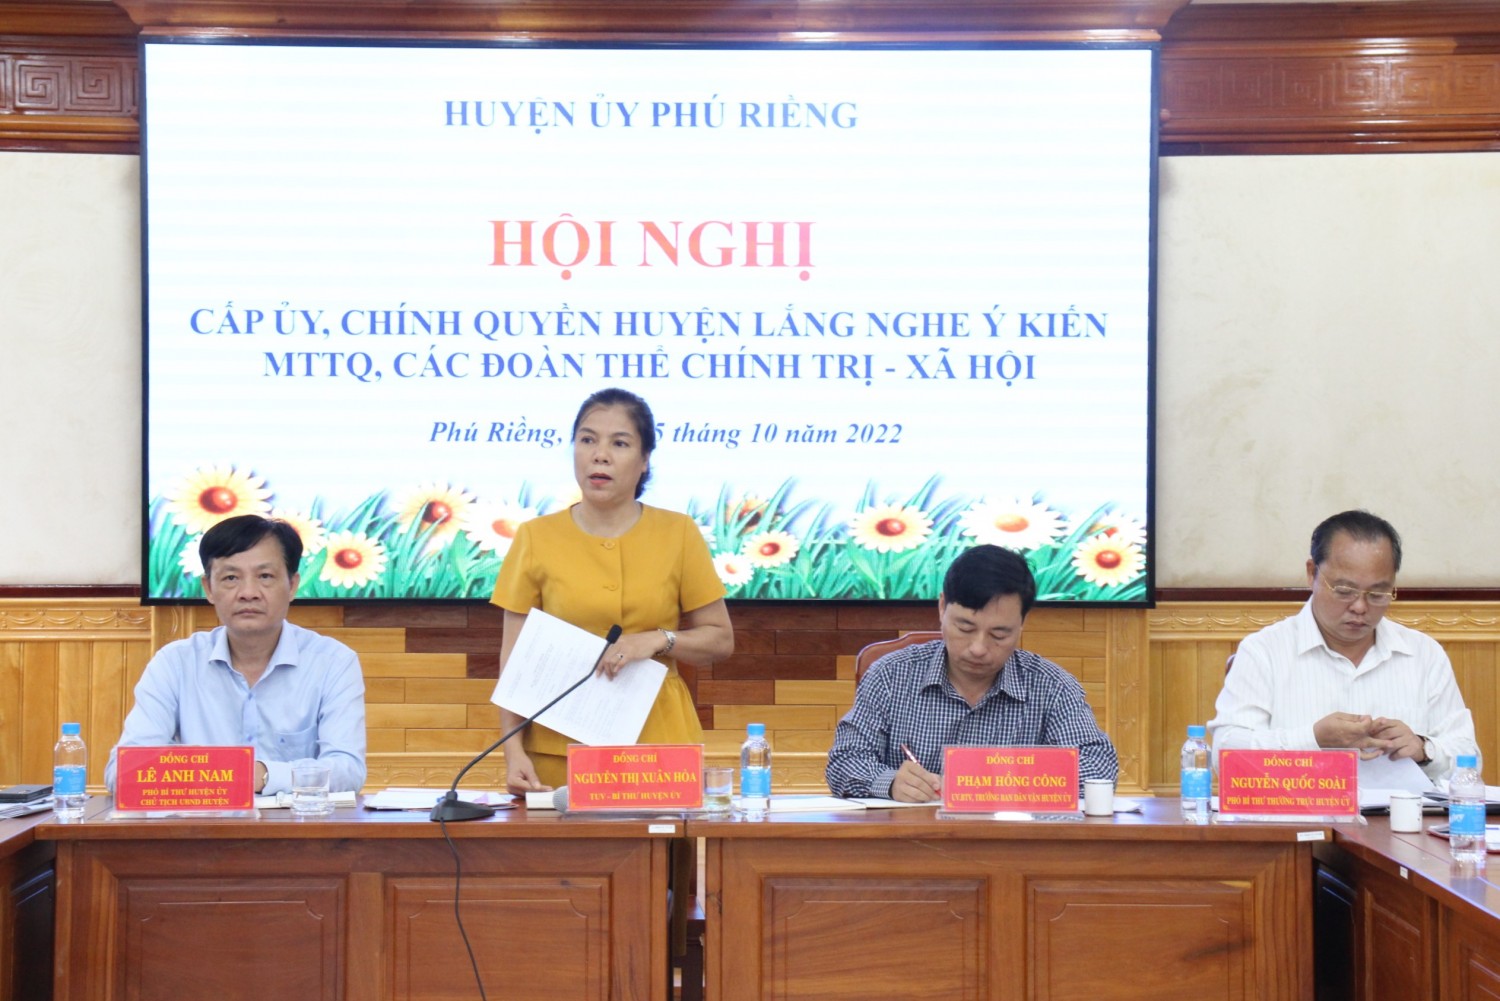 Huyện ủy Phú Riềng lắng nghe ý kiến của MTTQ, các đoàn thể chính trị- xã hội.